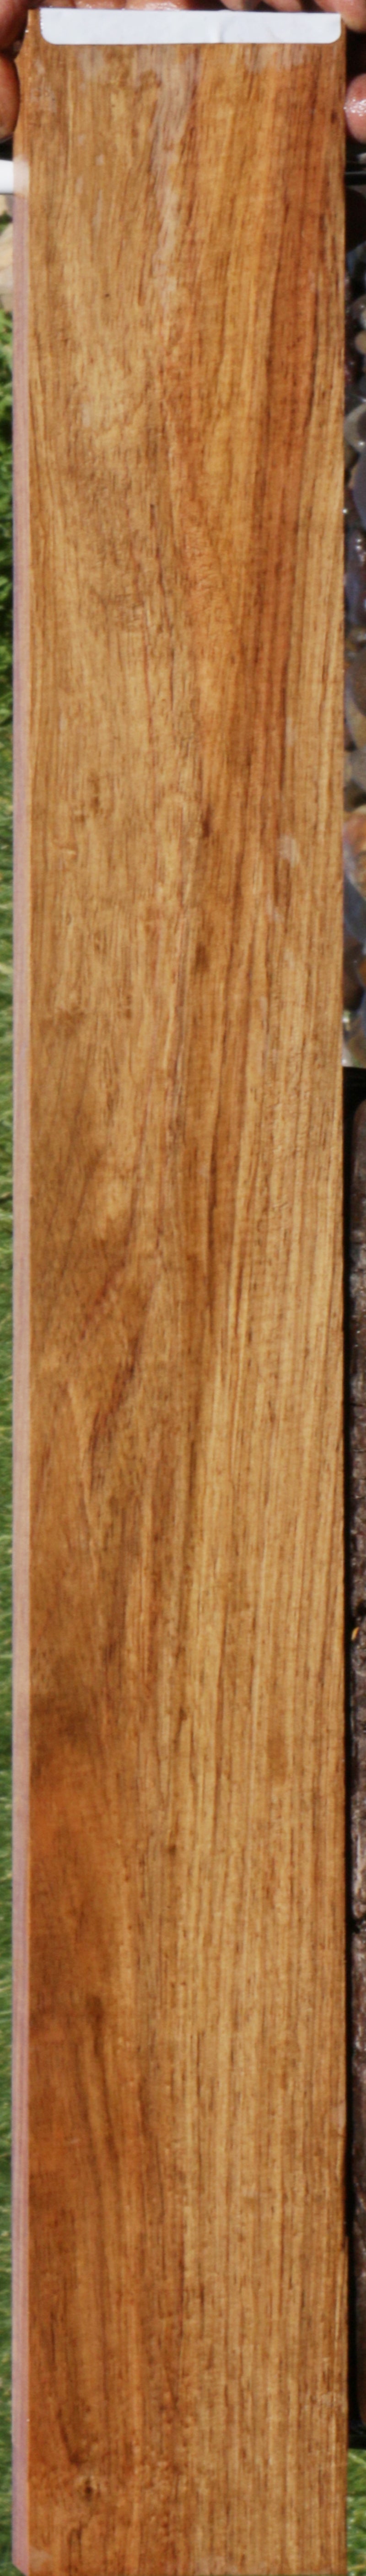 Honduras Rosewood Micro Lumber